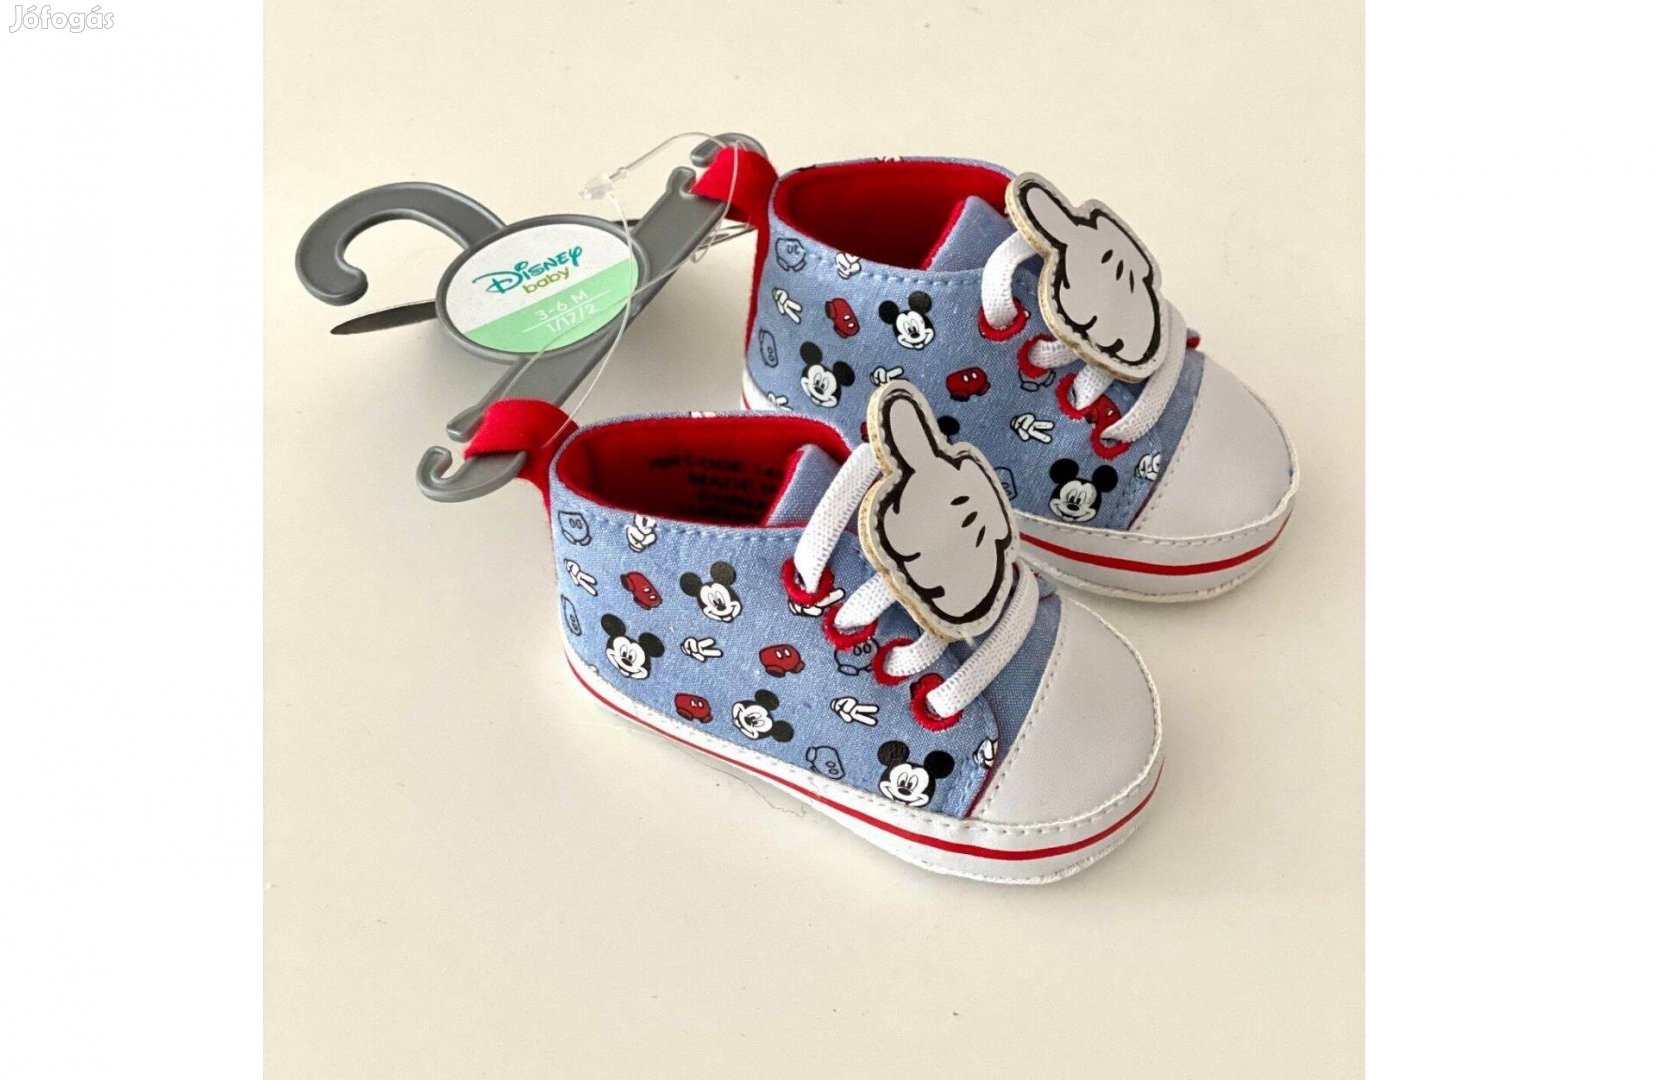 Disney Mickey mouse cipő babacipőcske kocsicipő 3-6 hó 17